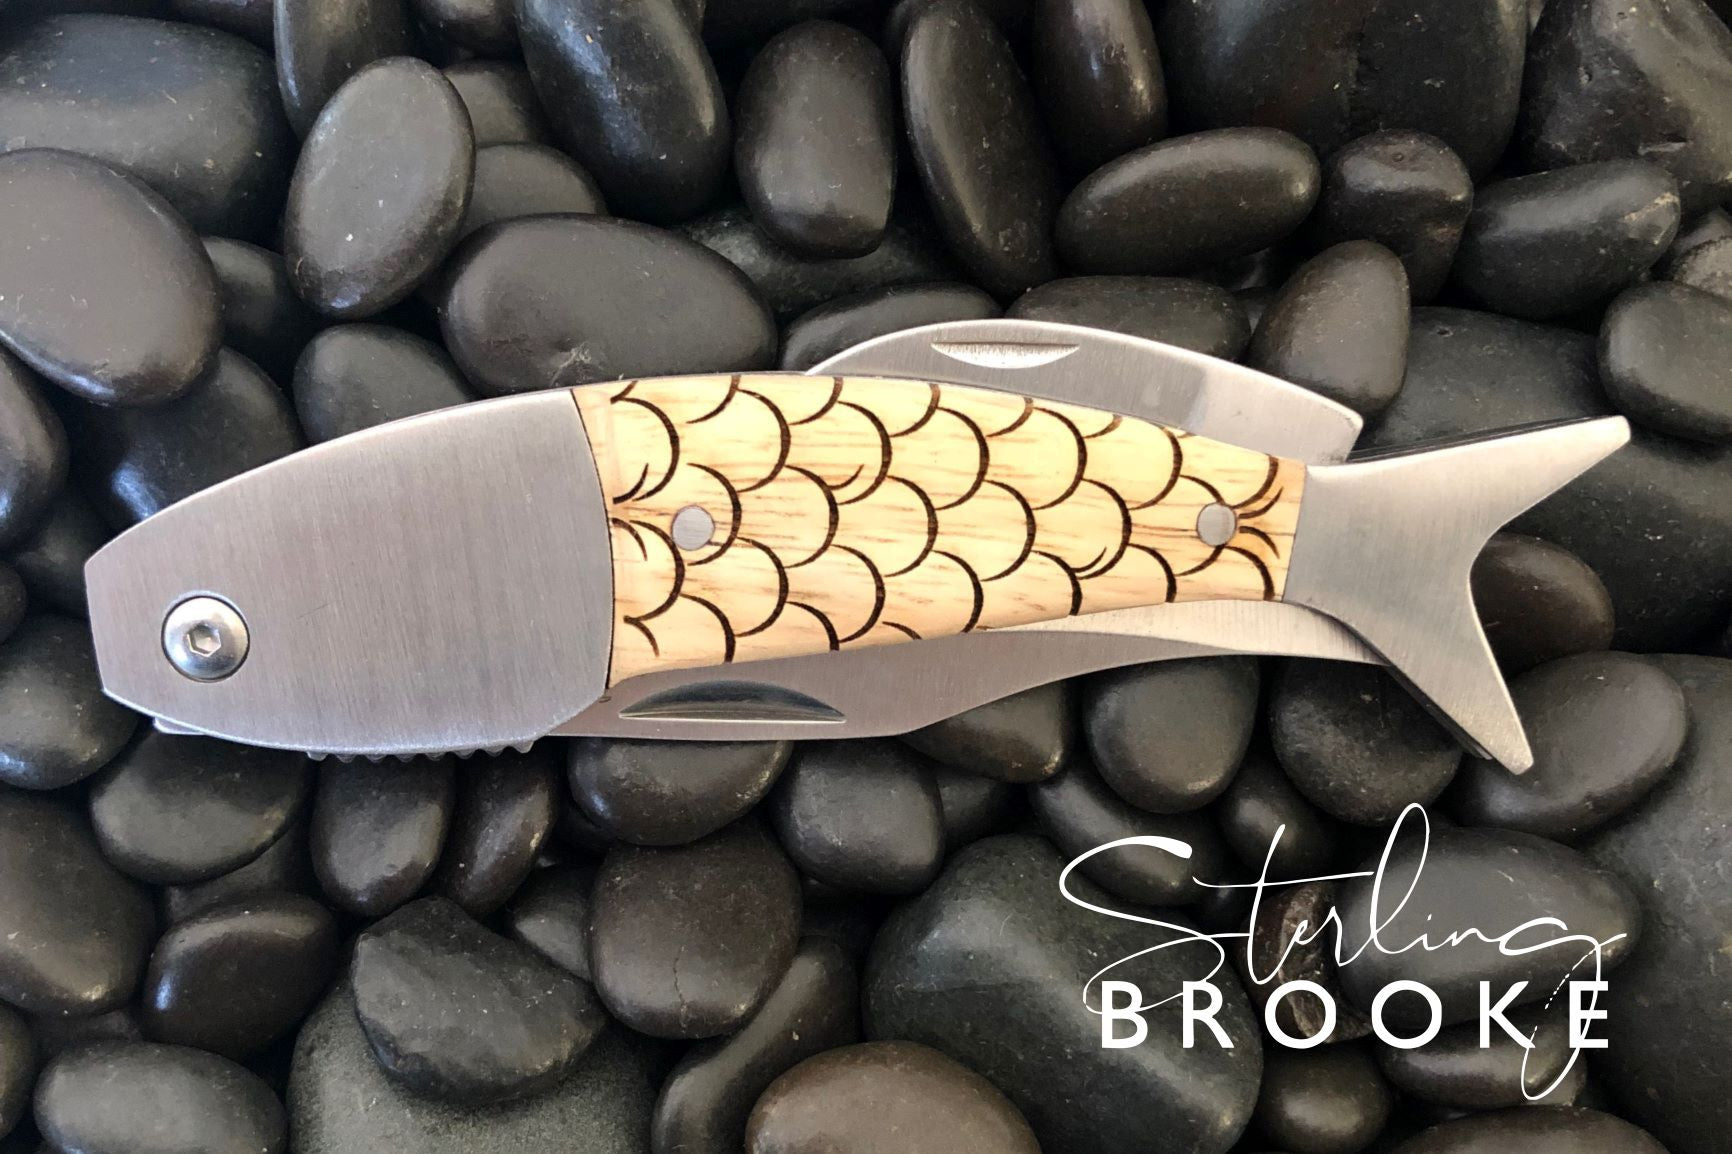 Pocket Knives – Sterling Brooke